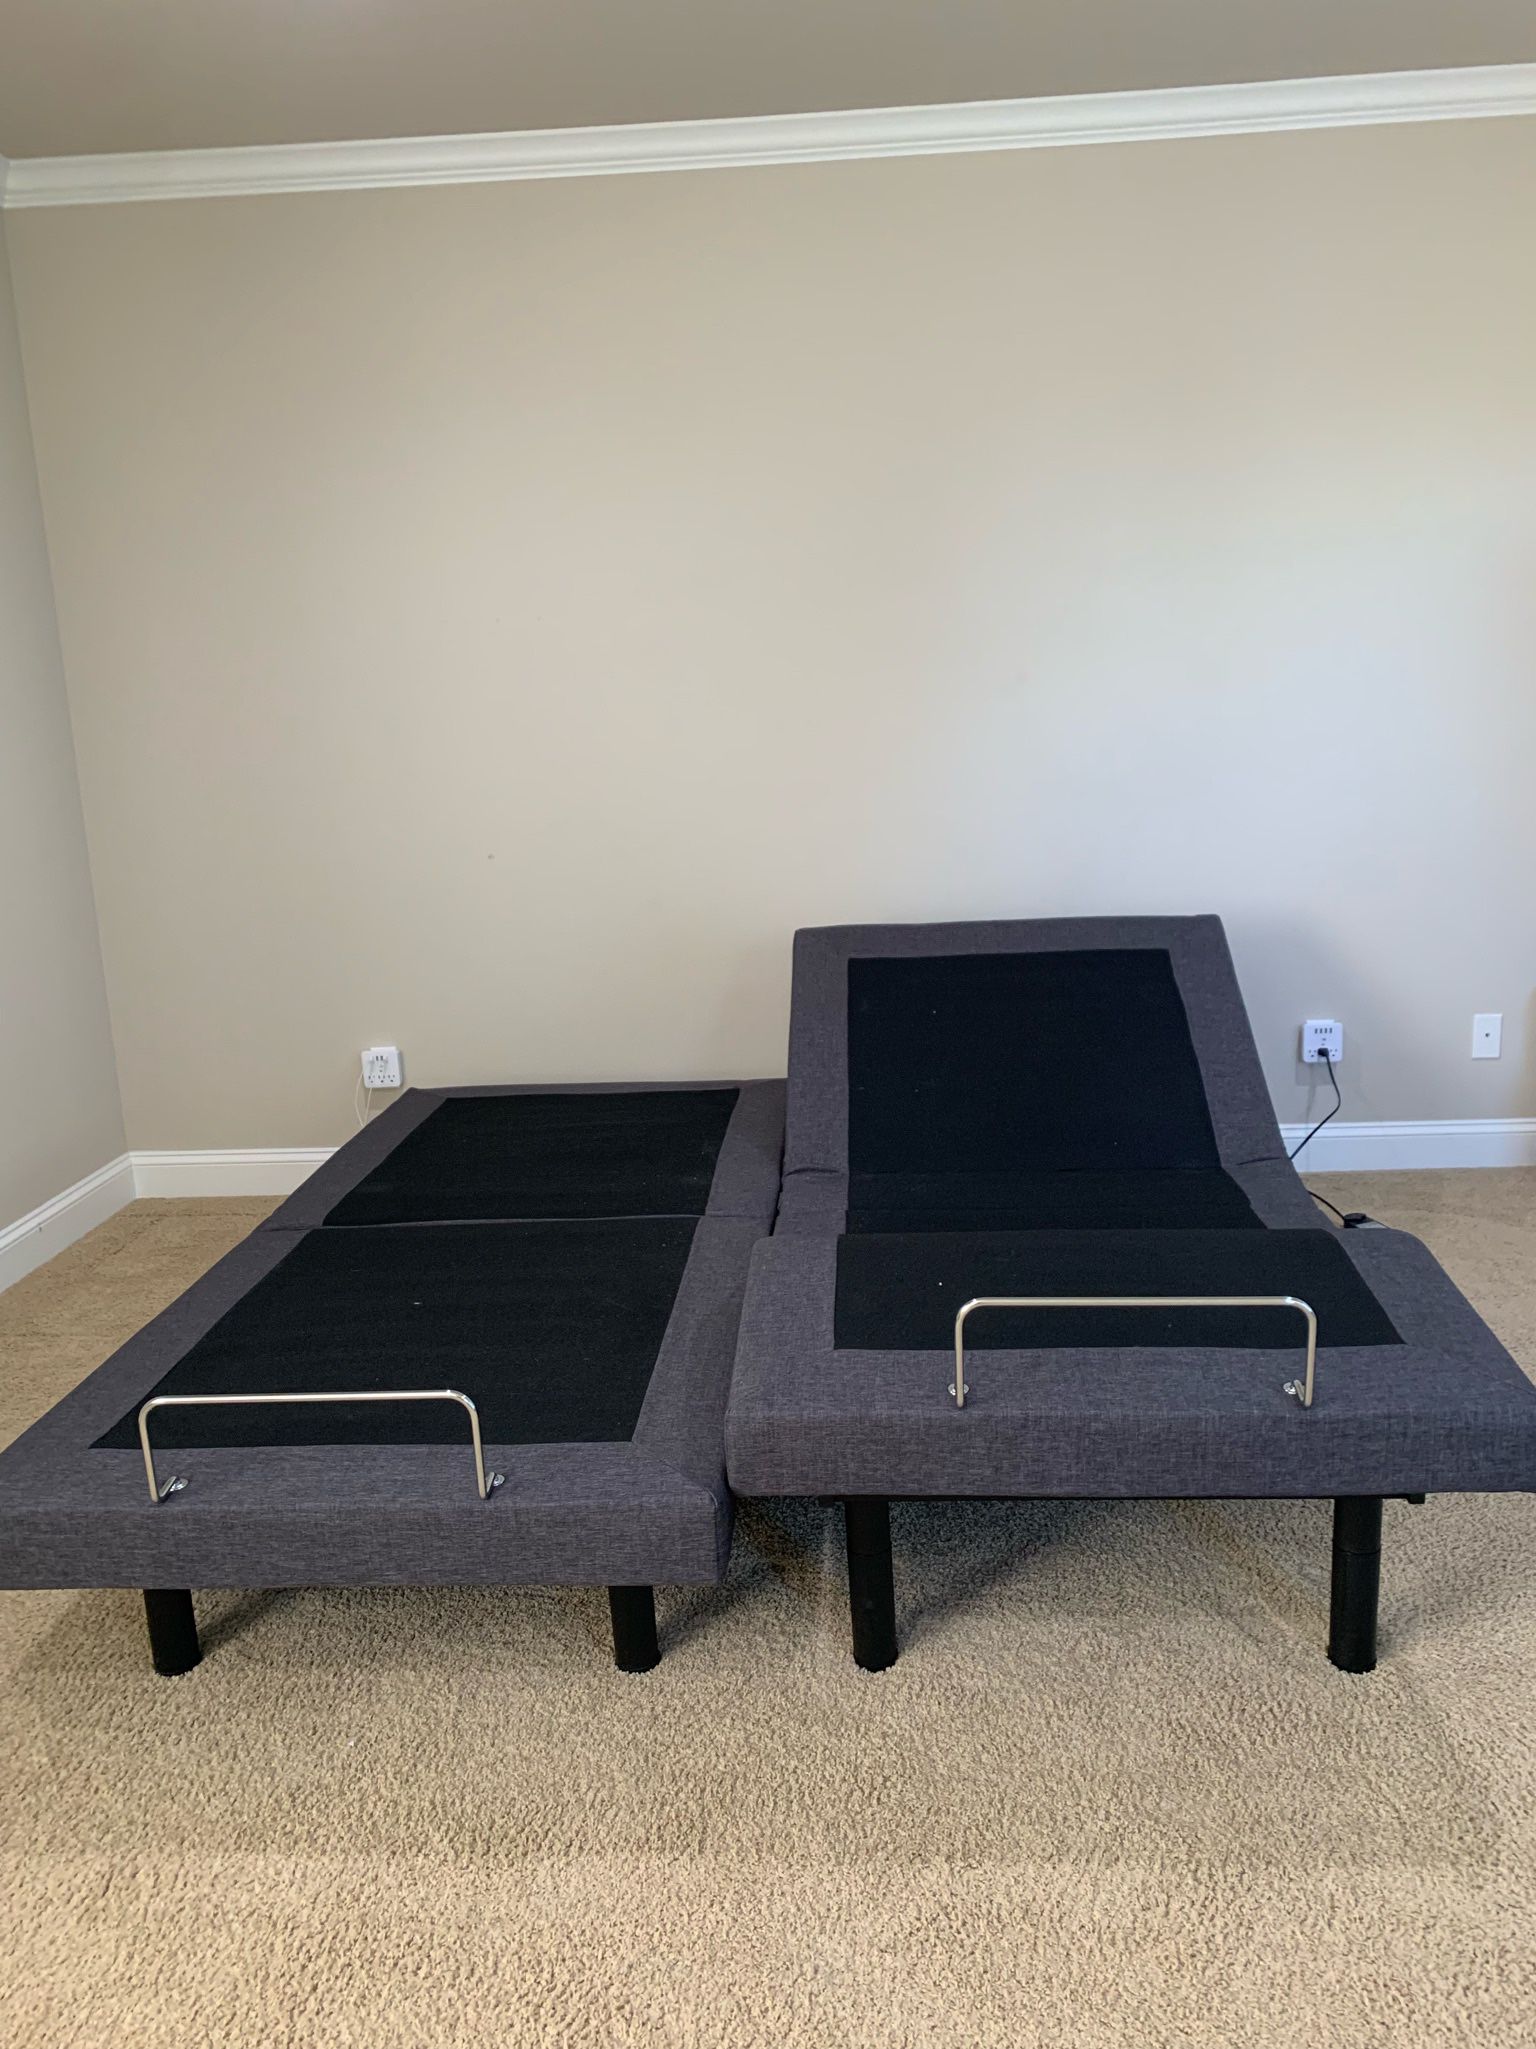 nectar bed frame setup